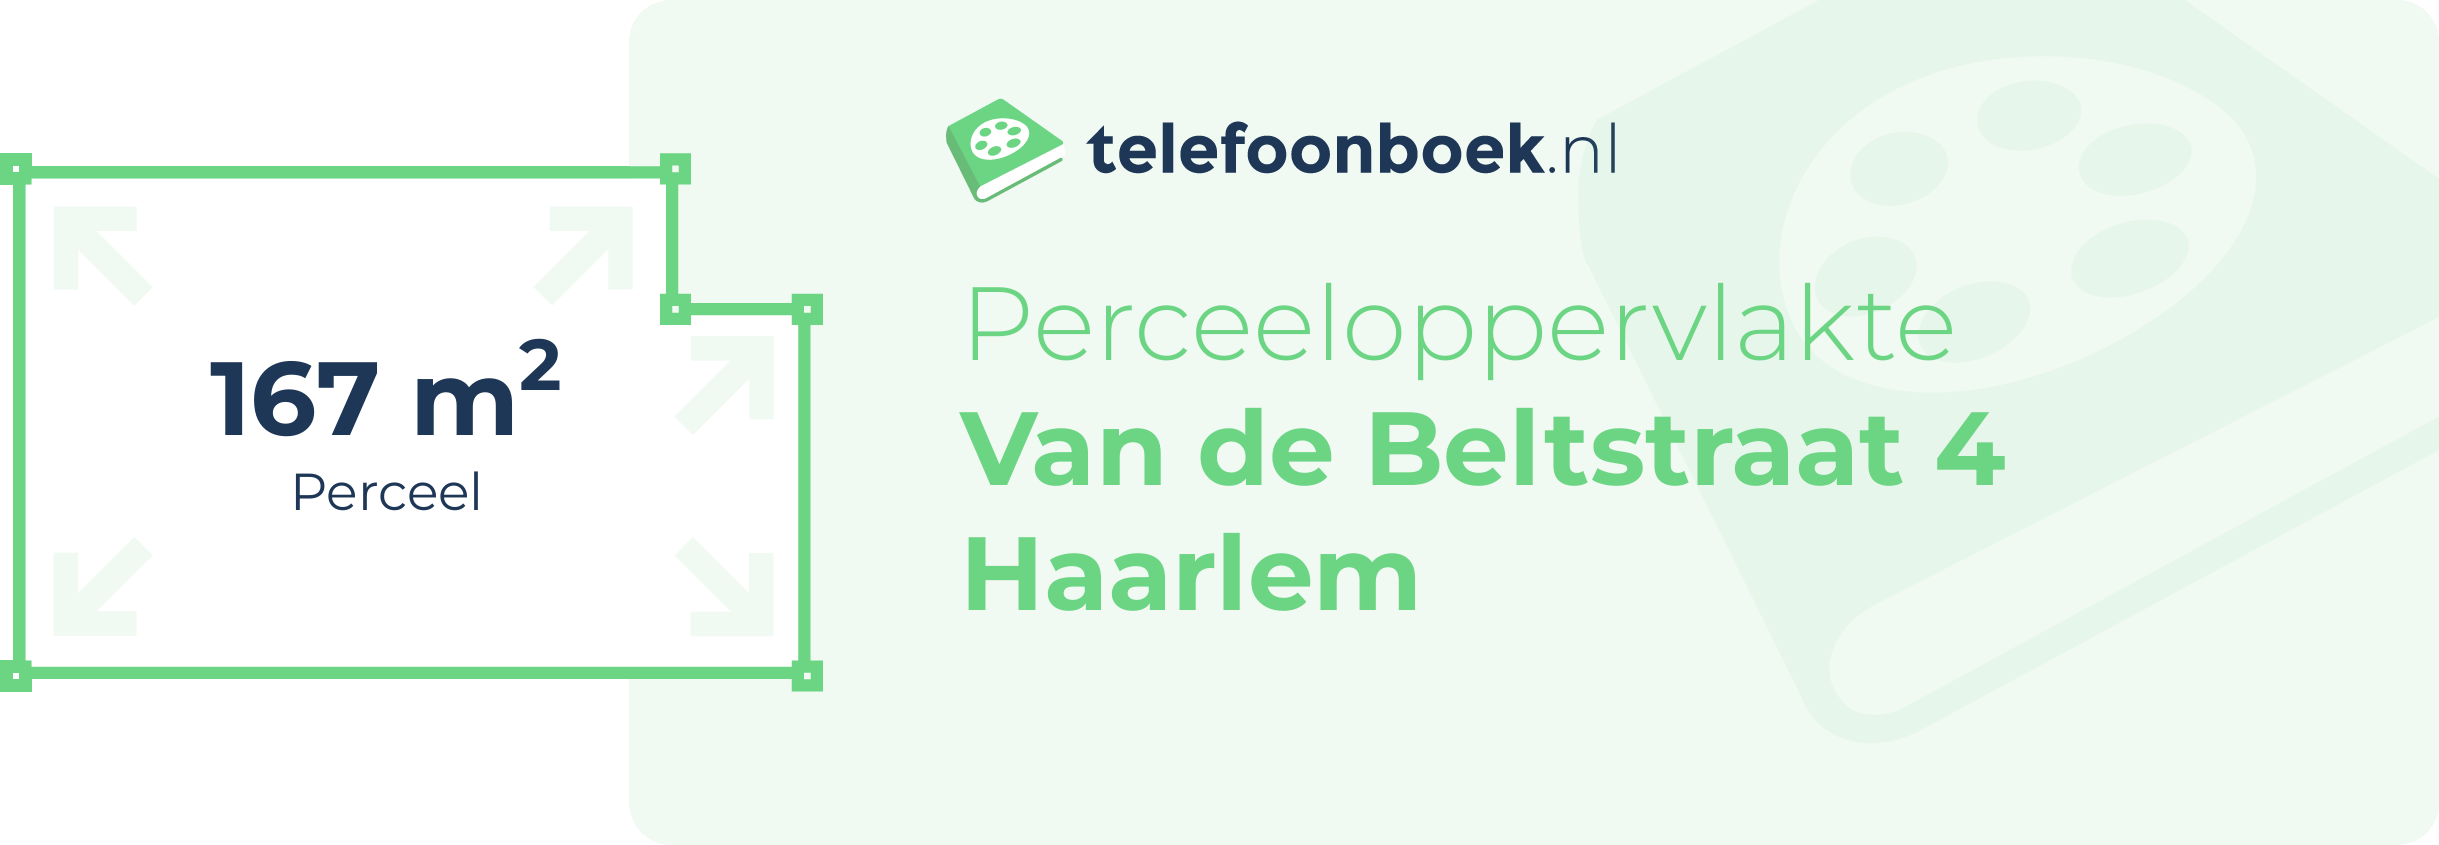 Perceeloppervlakte Van De Beltstraat 4 Haarlem